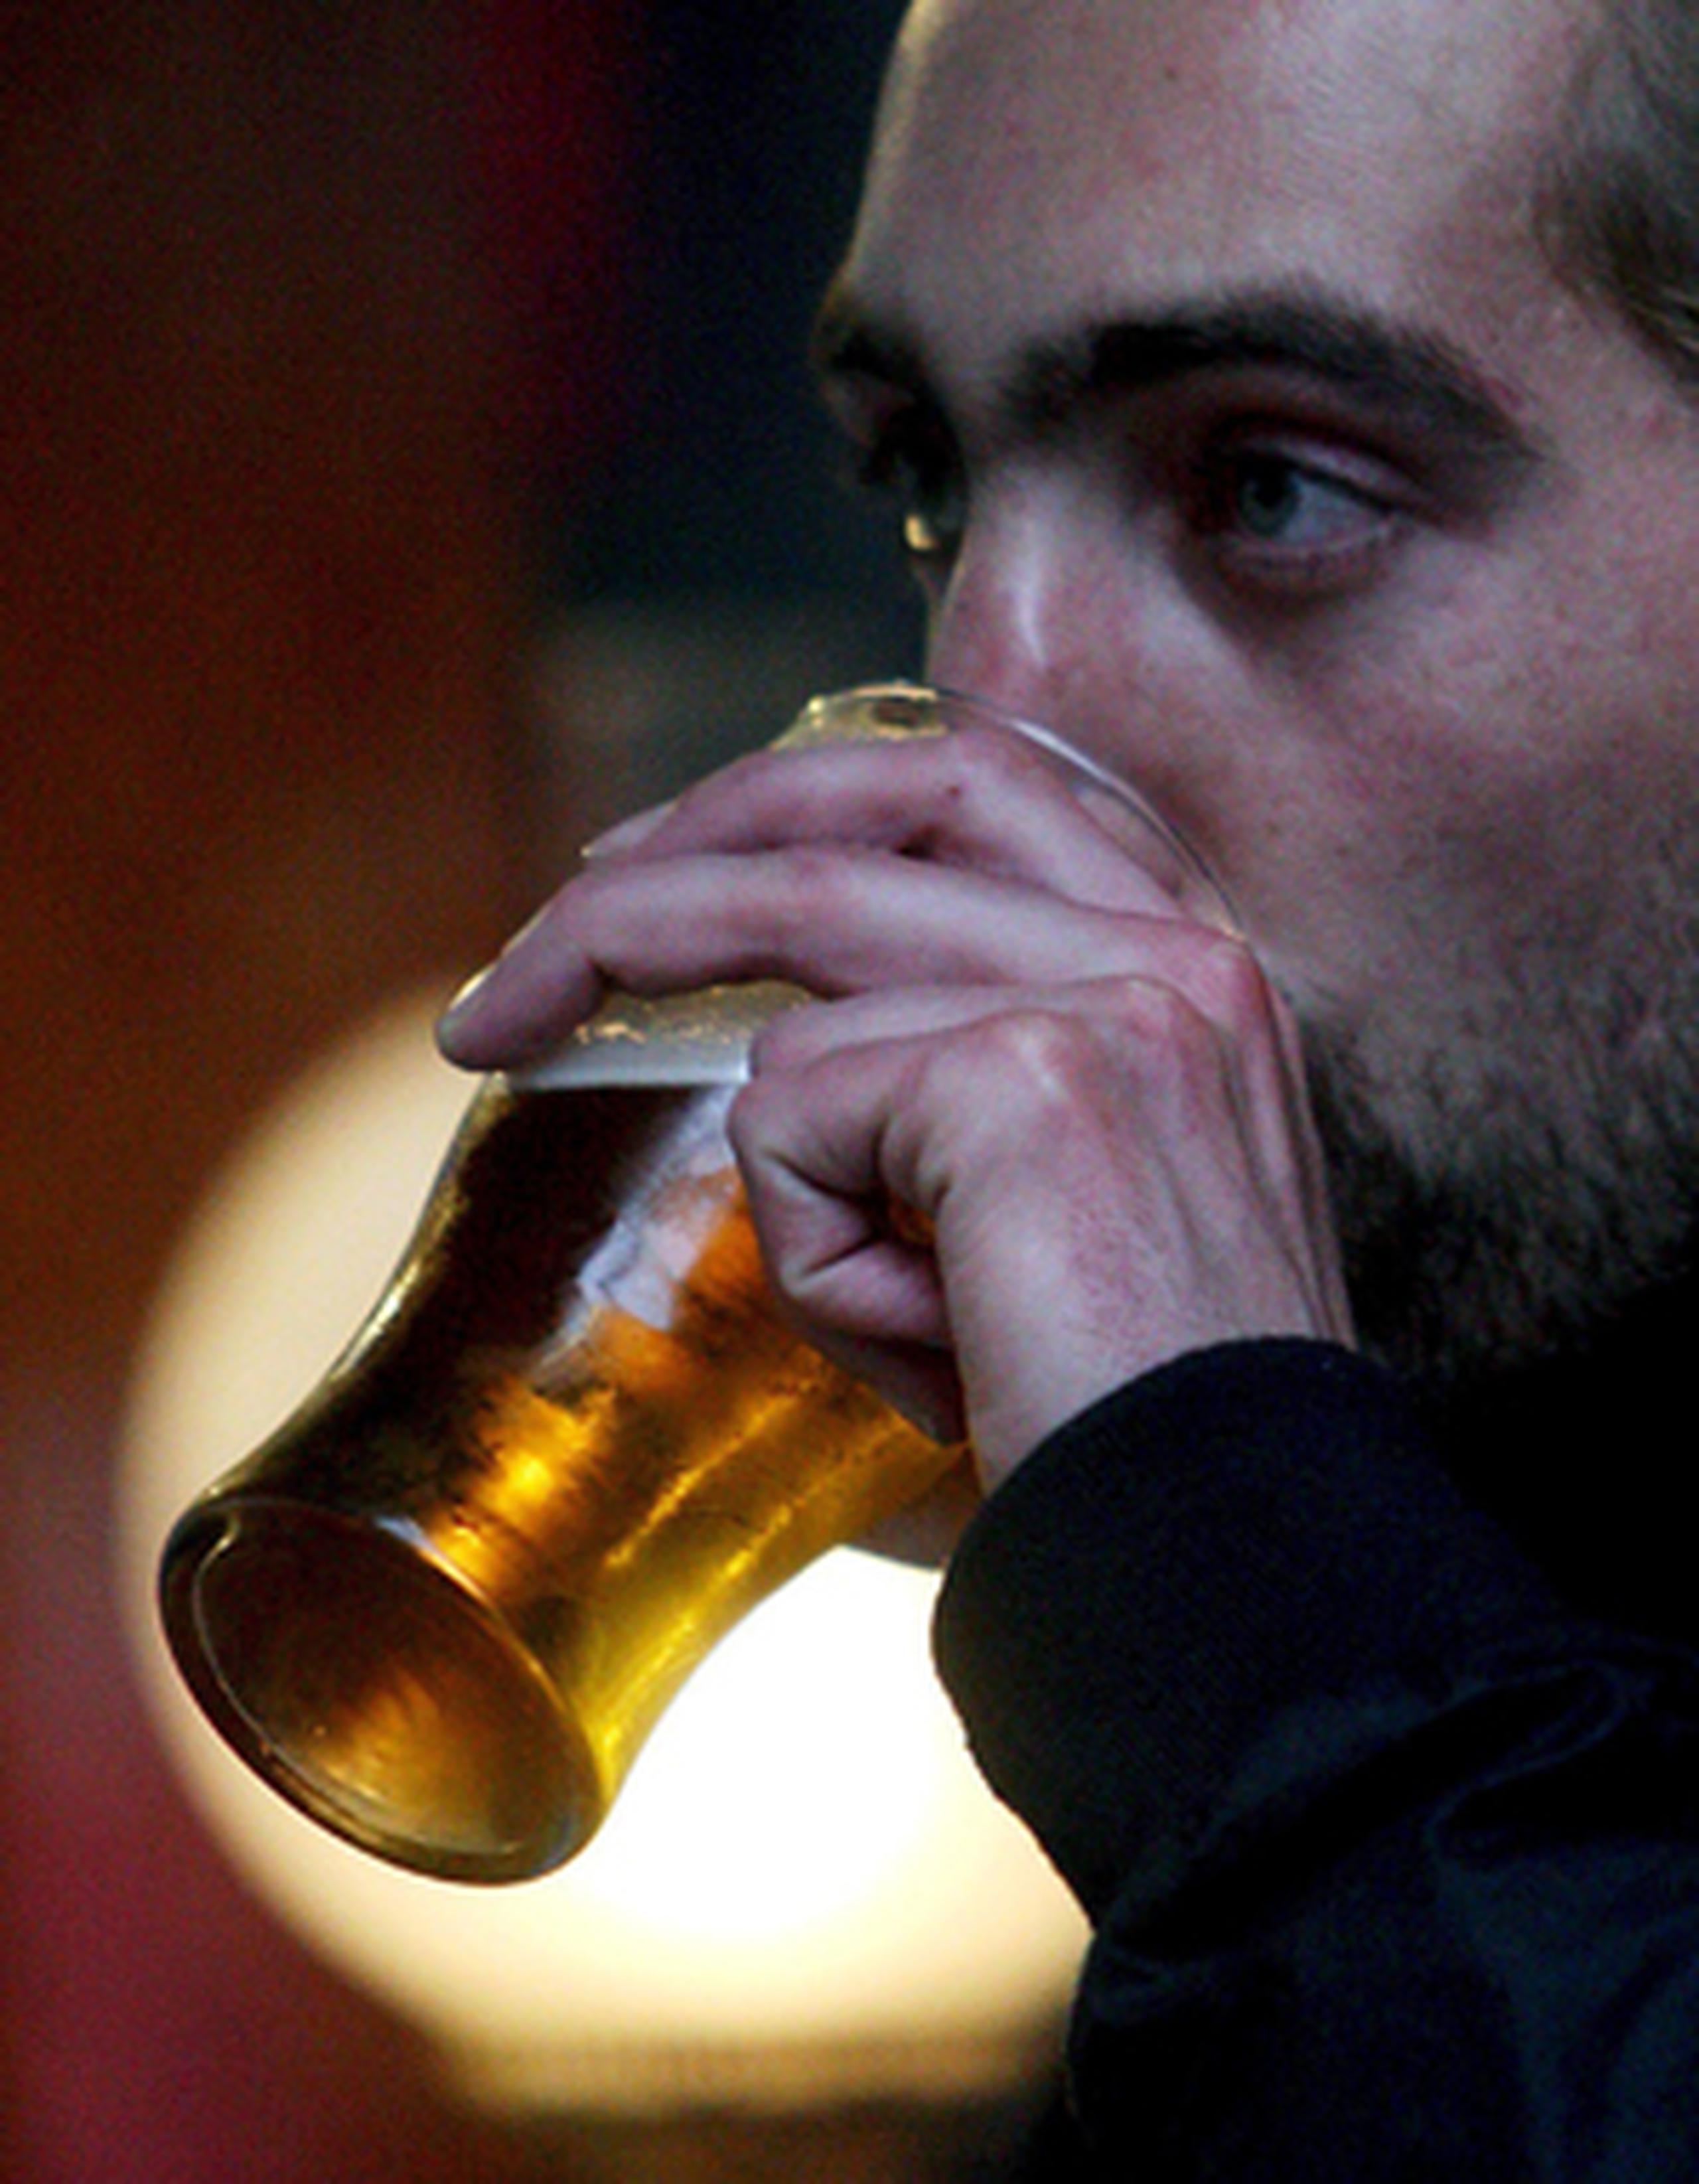 Otra de las causas del por qué los puertorriqueños comienzan a beber alcohol a tan temprana edad es por la conducta social de la isla, donde el consumo de bebidas alcohólicas es tolerado. (Archivo)